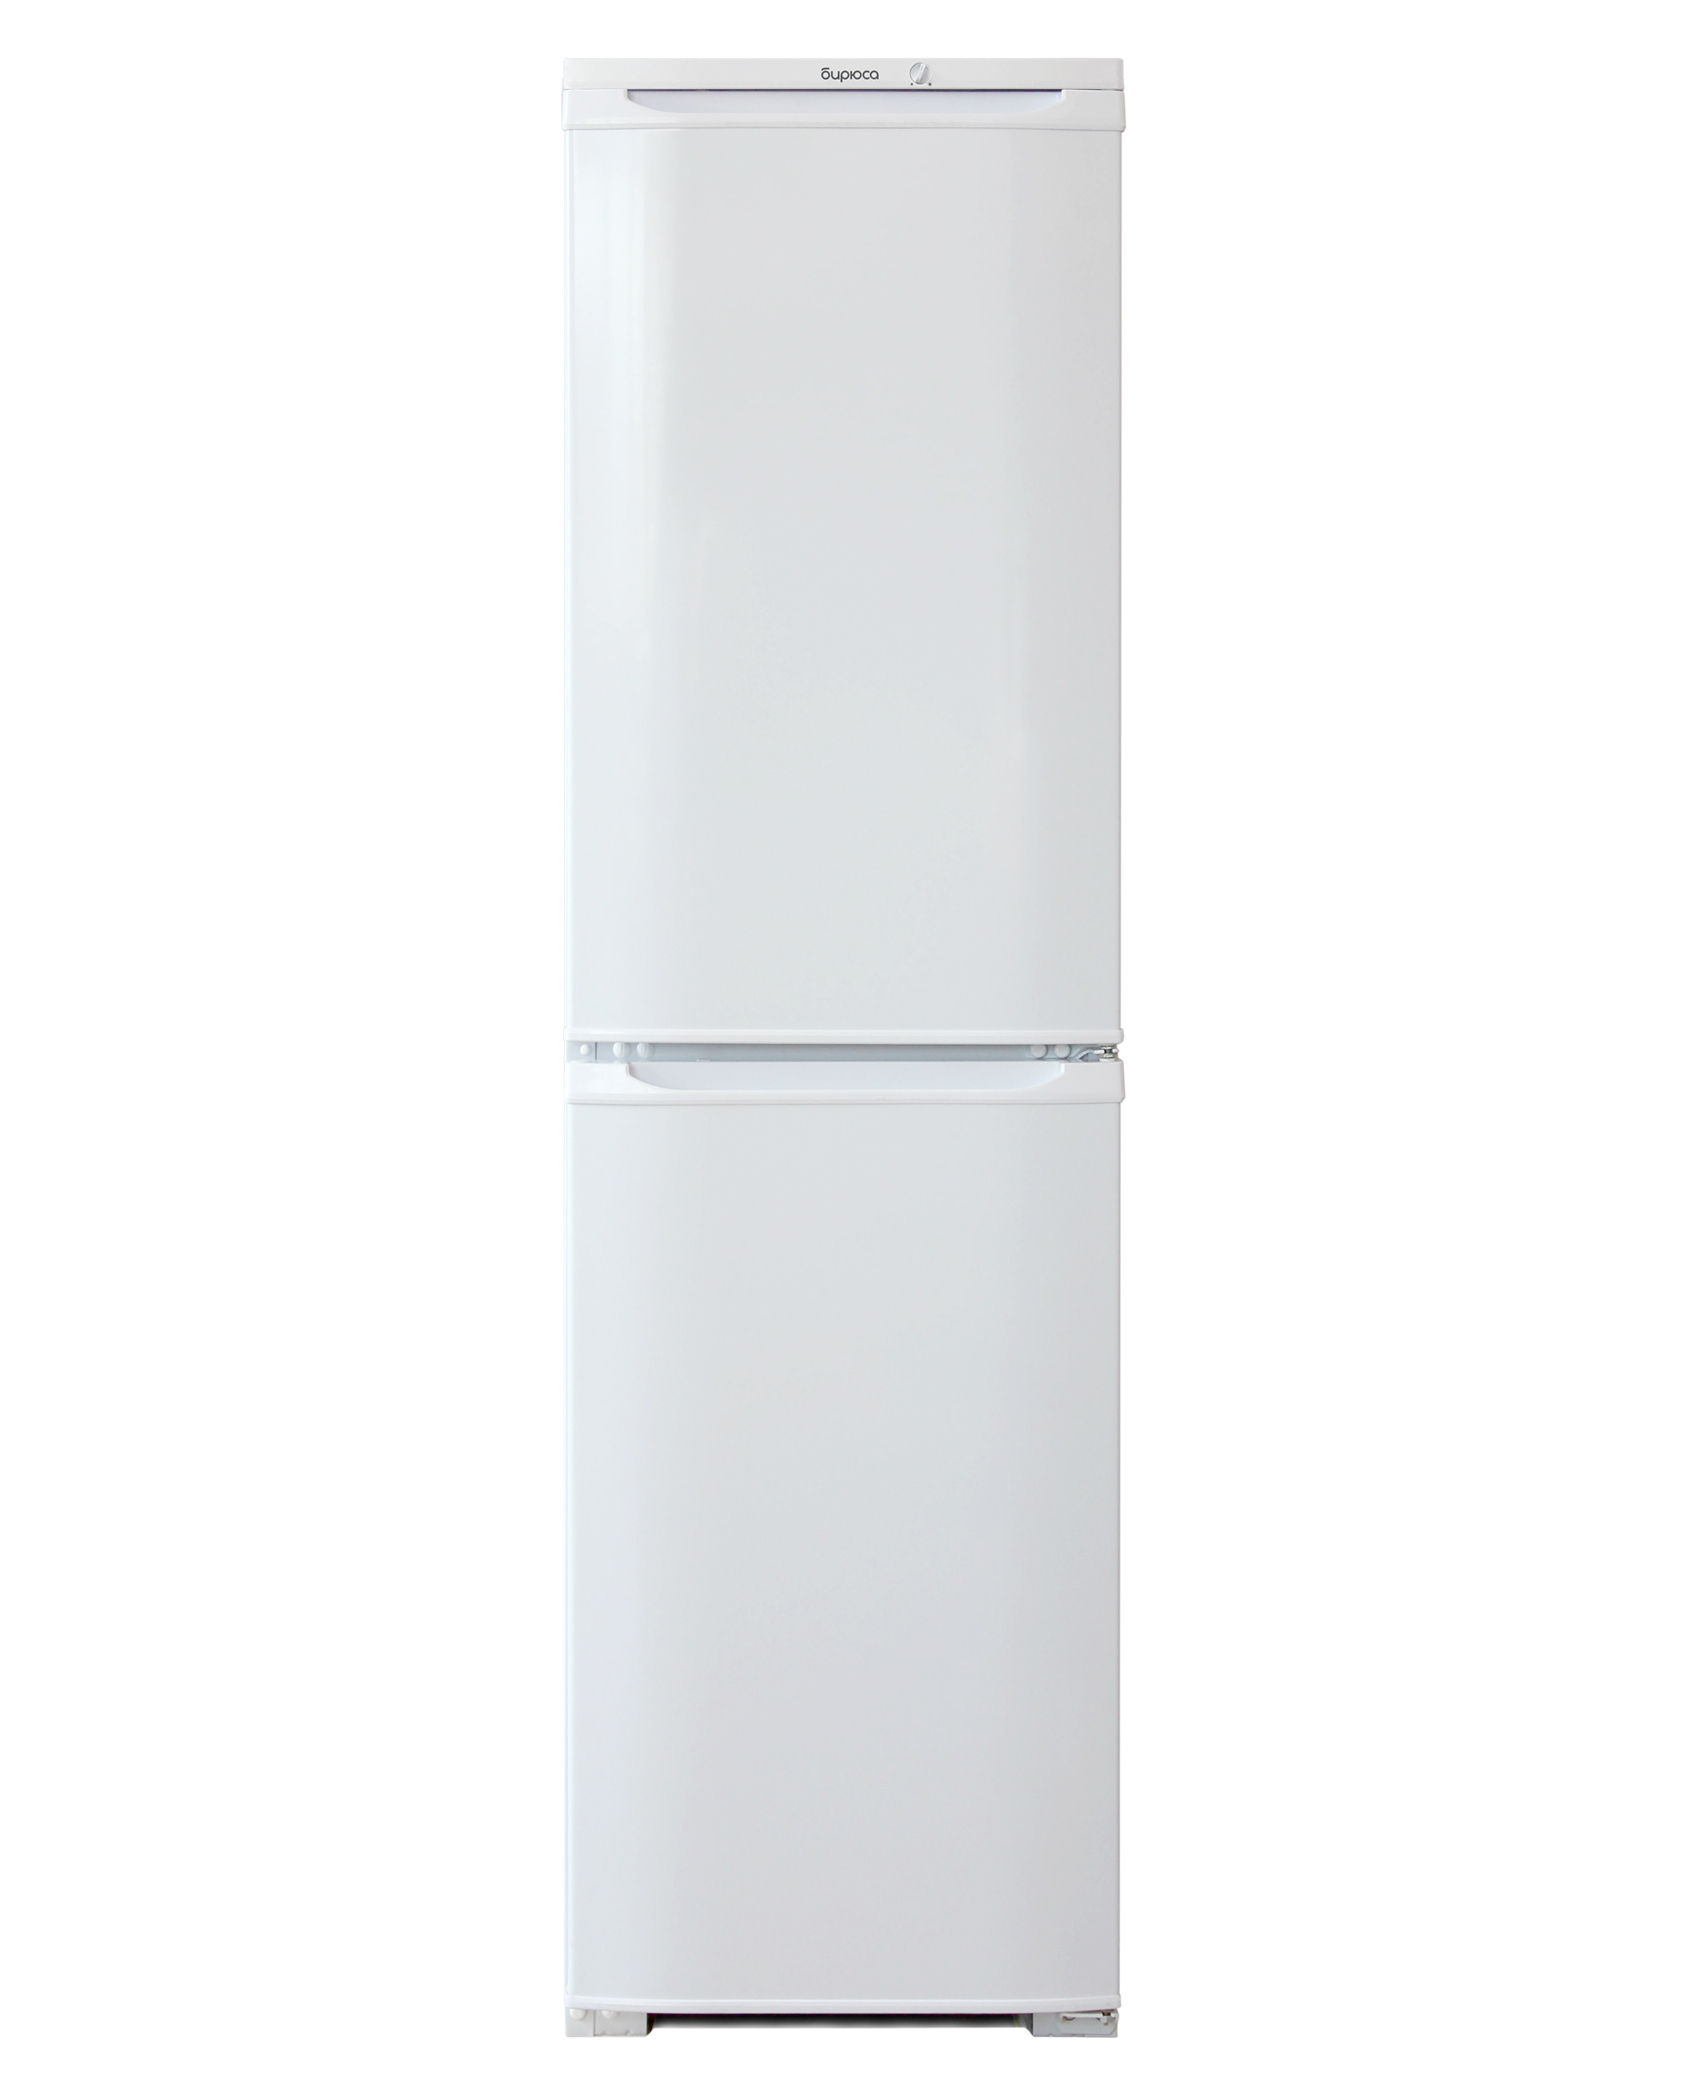 Холодильник Бирюса 120. Холодильник Бирюса двухкамерный. Холодильник Бирюса 120 характеристики. Холодильник Бирюса двухкамерный модели высокий. Бирюса 120 купить